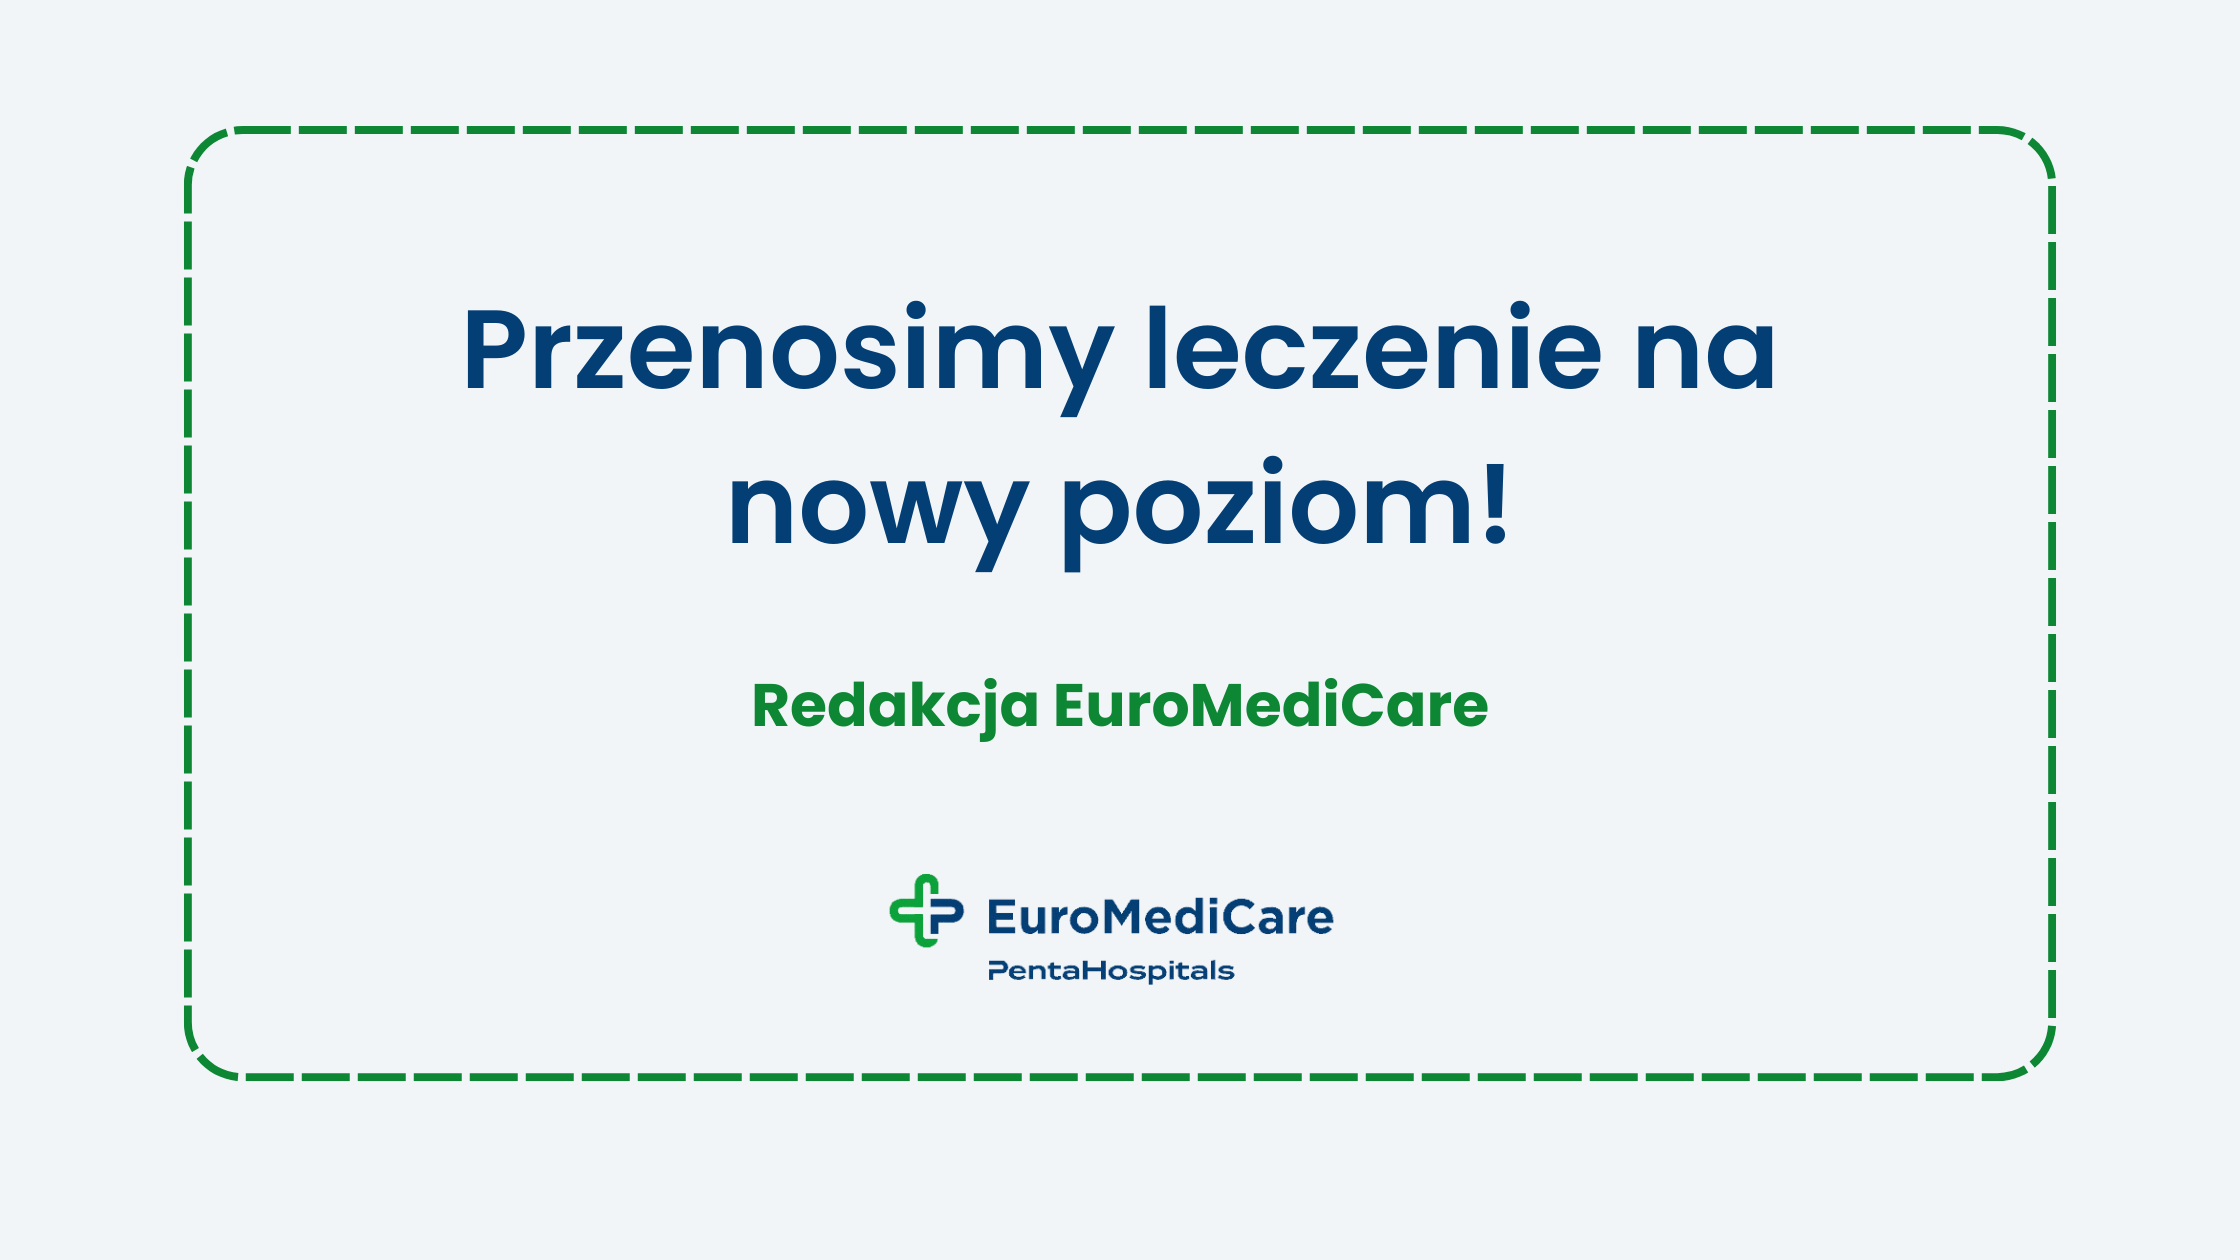 Przenosimy leczenie na nowy poziom! - aktualności euromedicare.pl